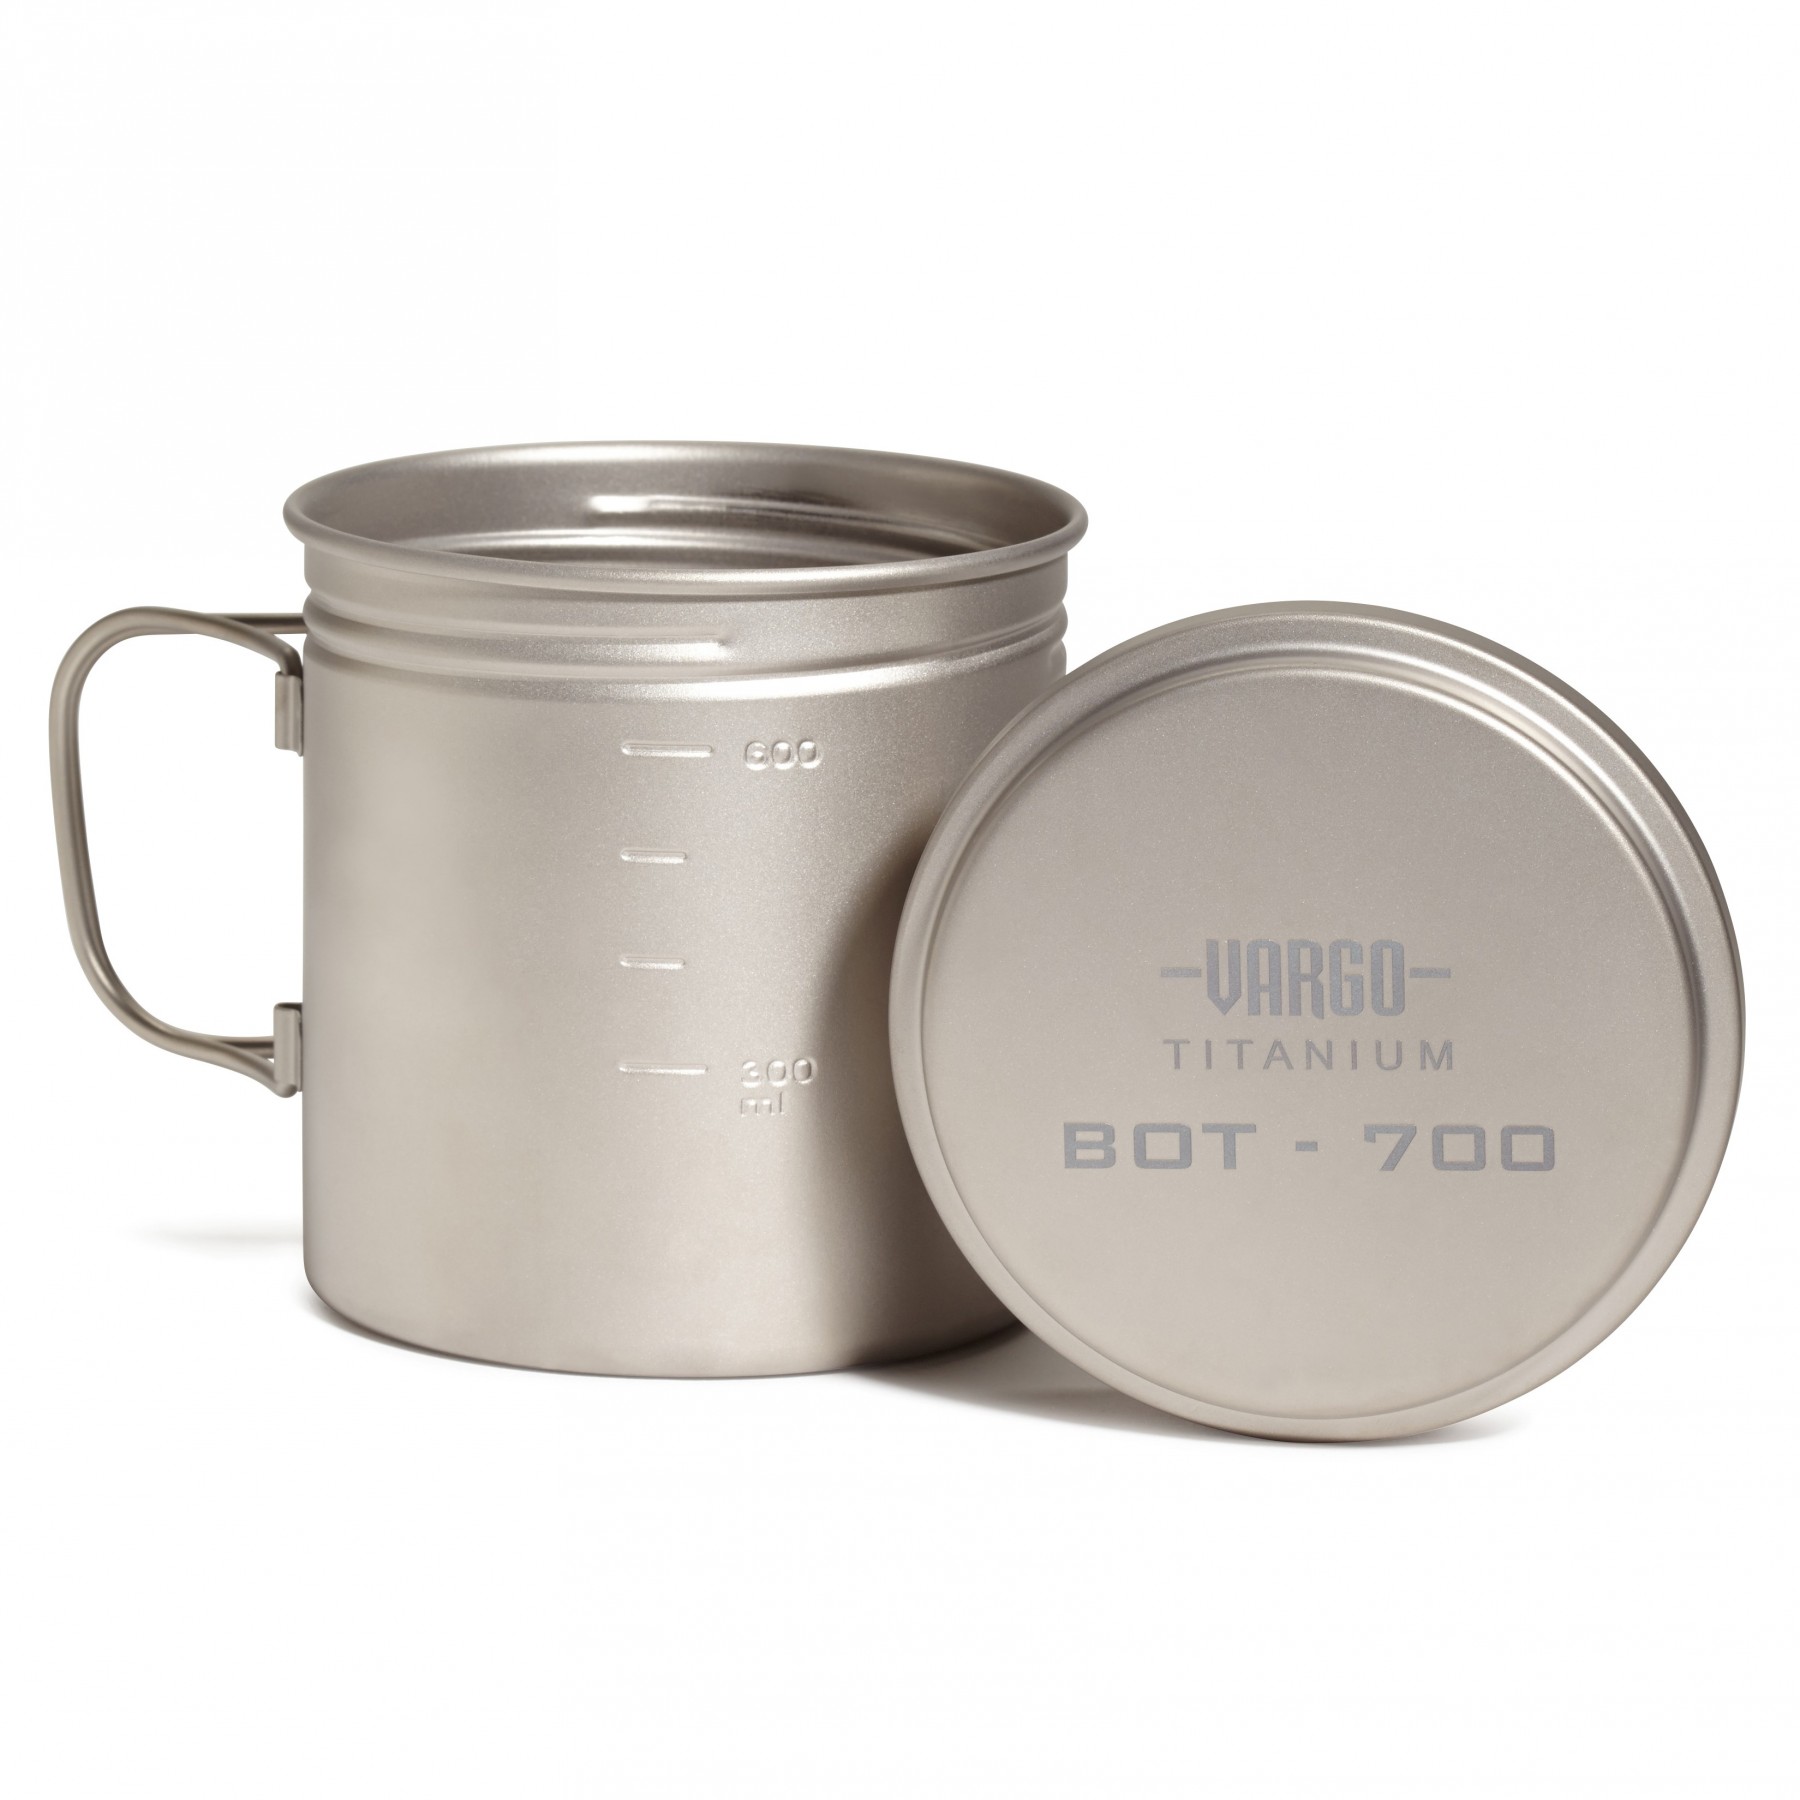 Vargo Titanium BOT Cooking Mug - 700 ml